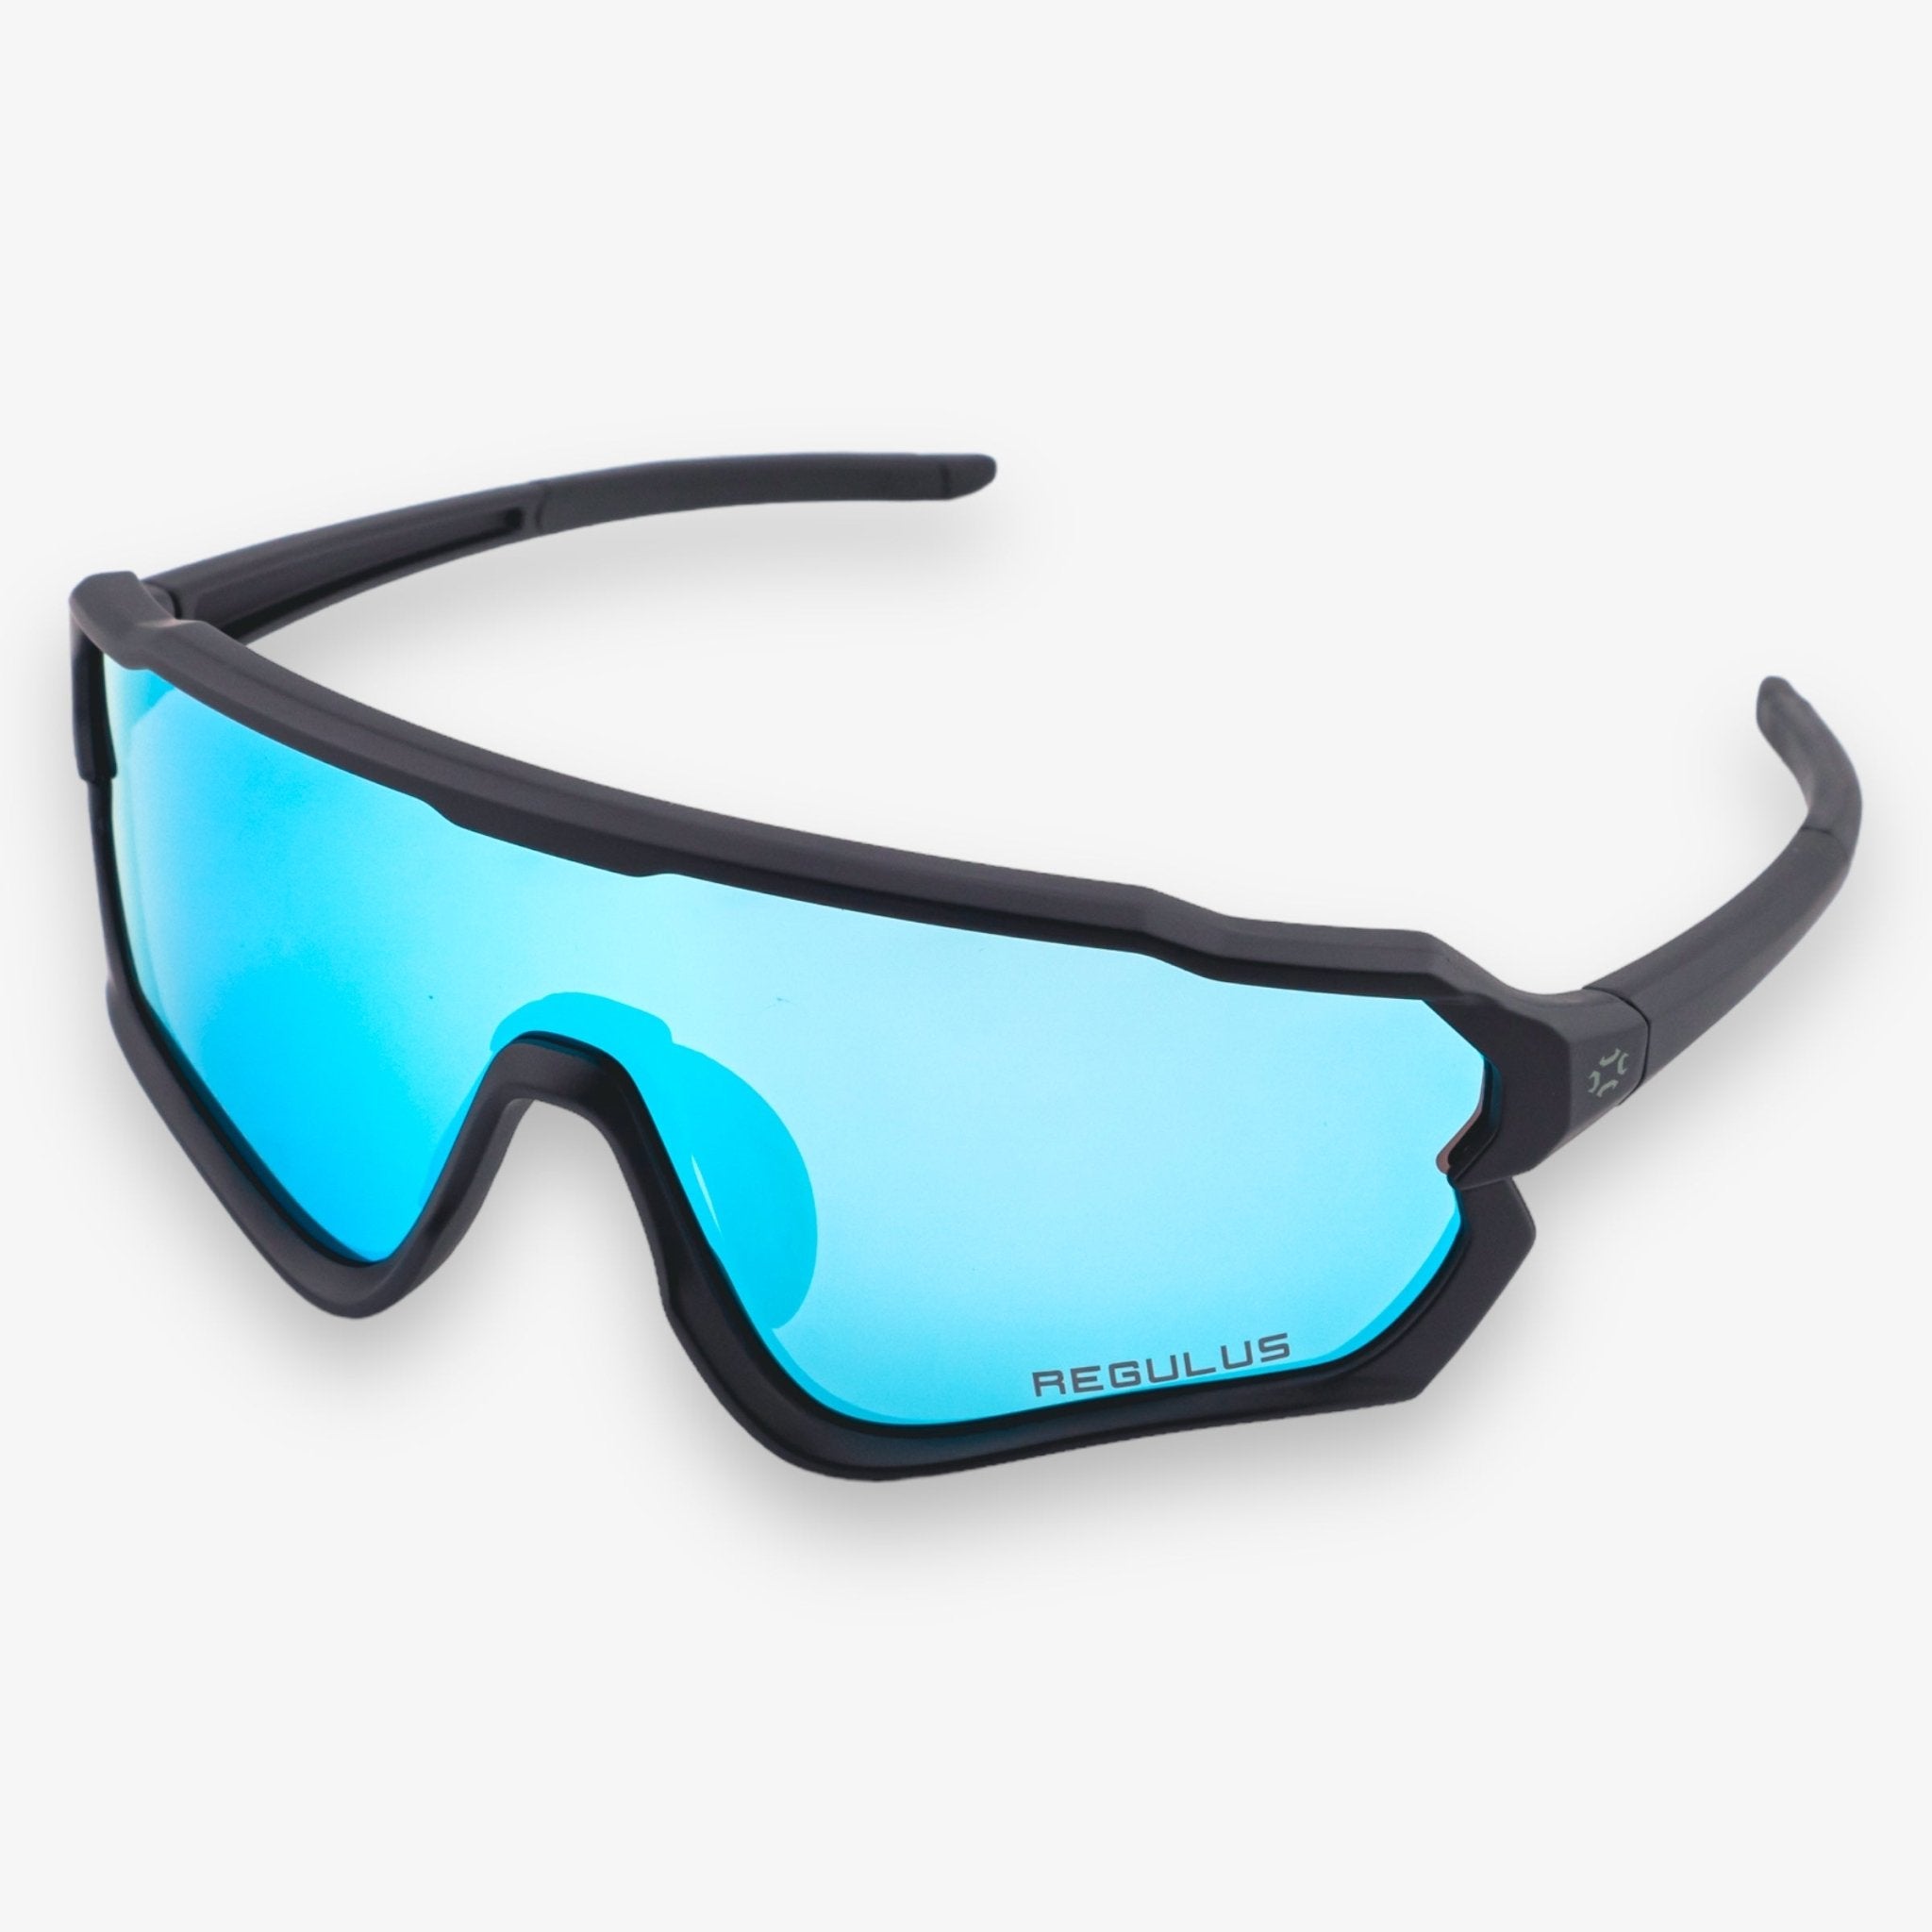 The Dyad - Sunglasses - Regulus Sports